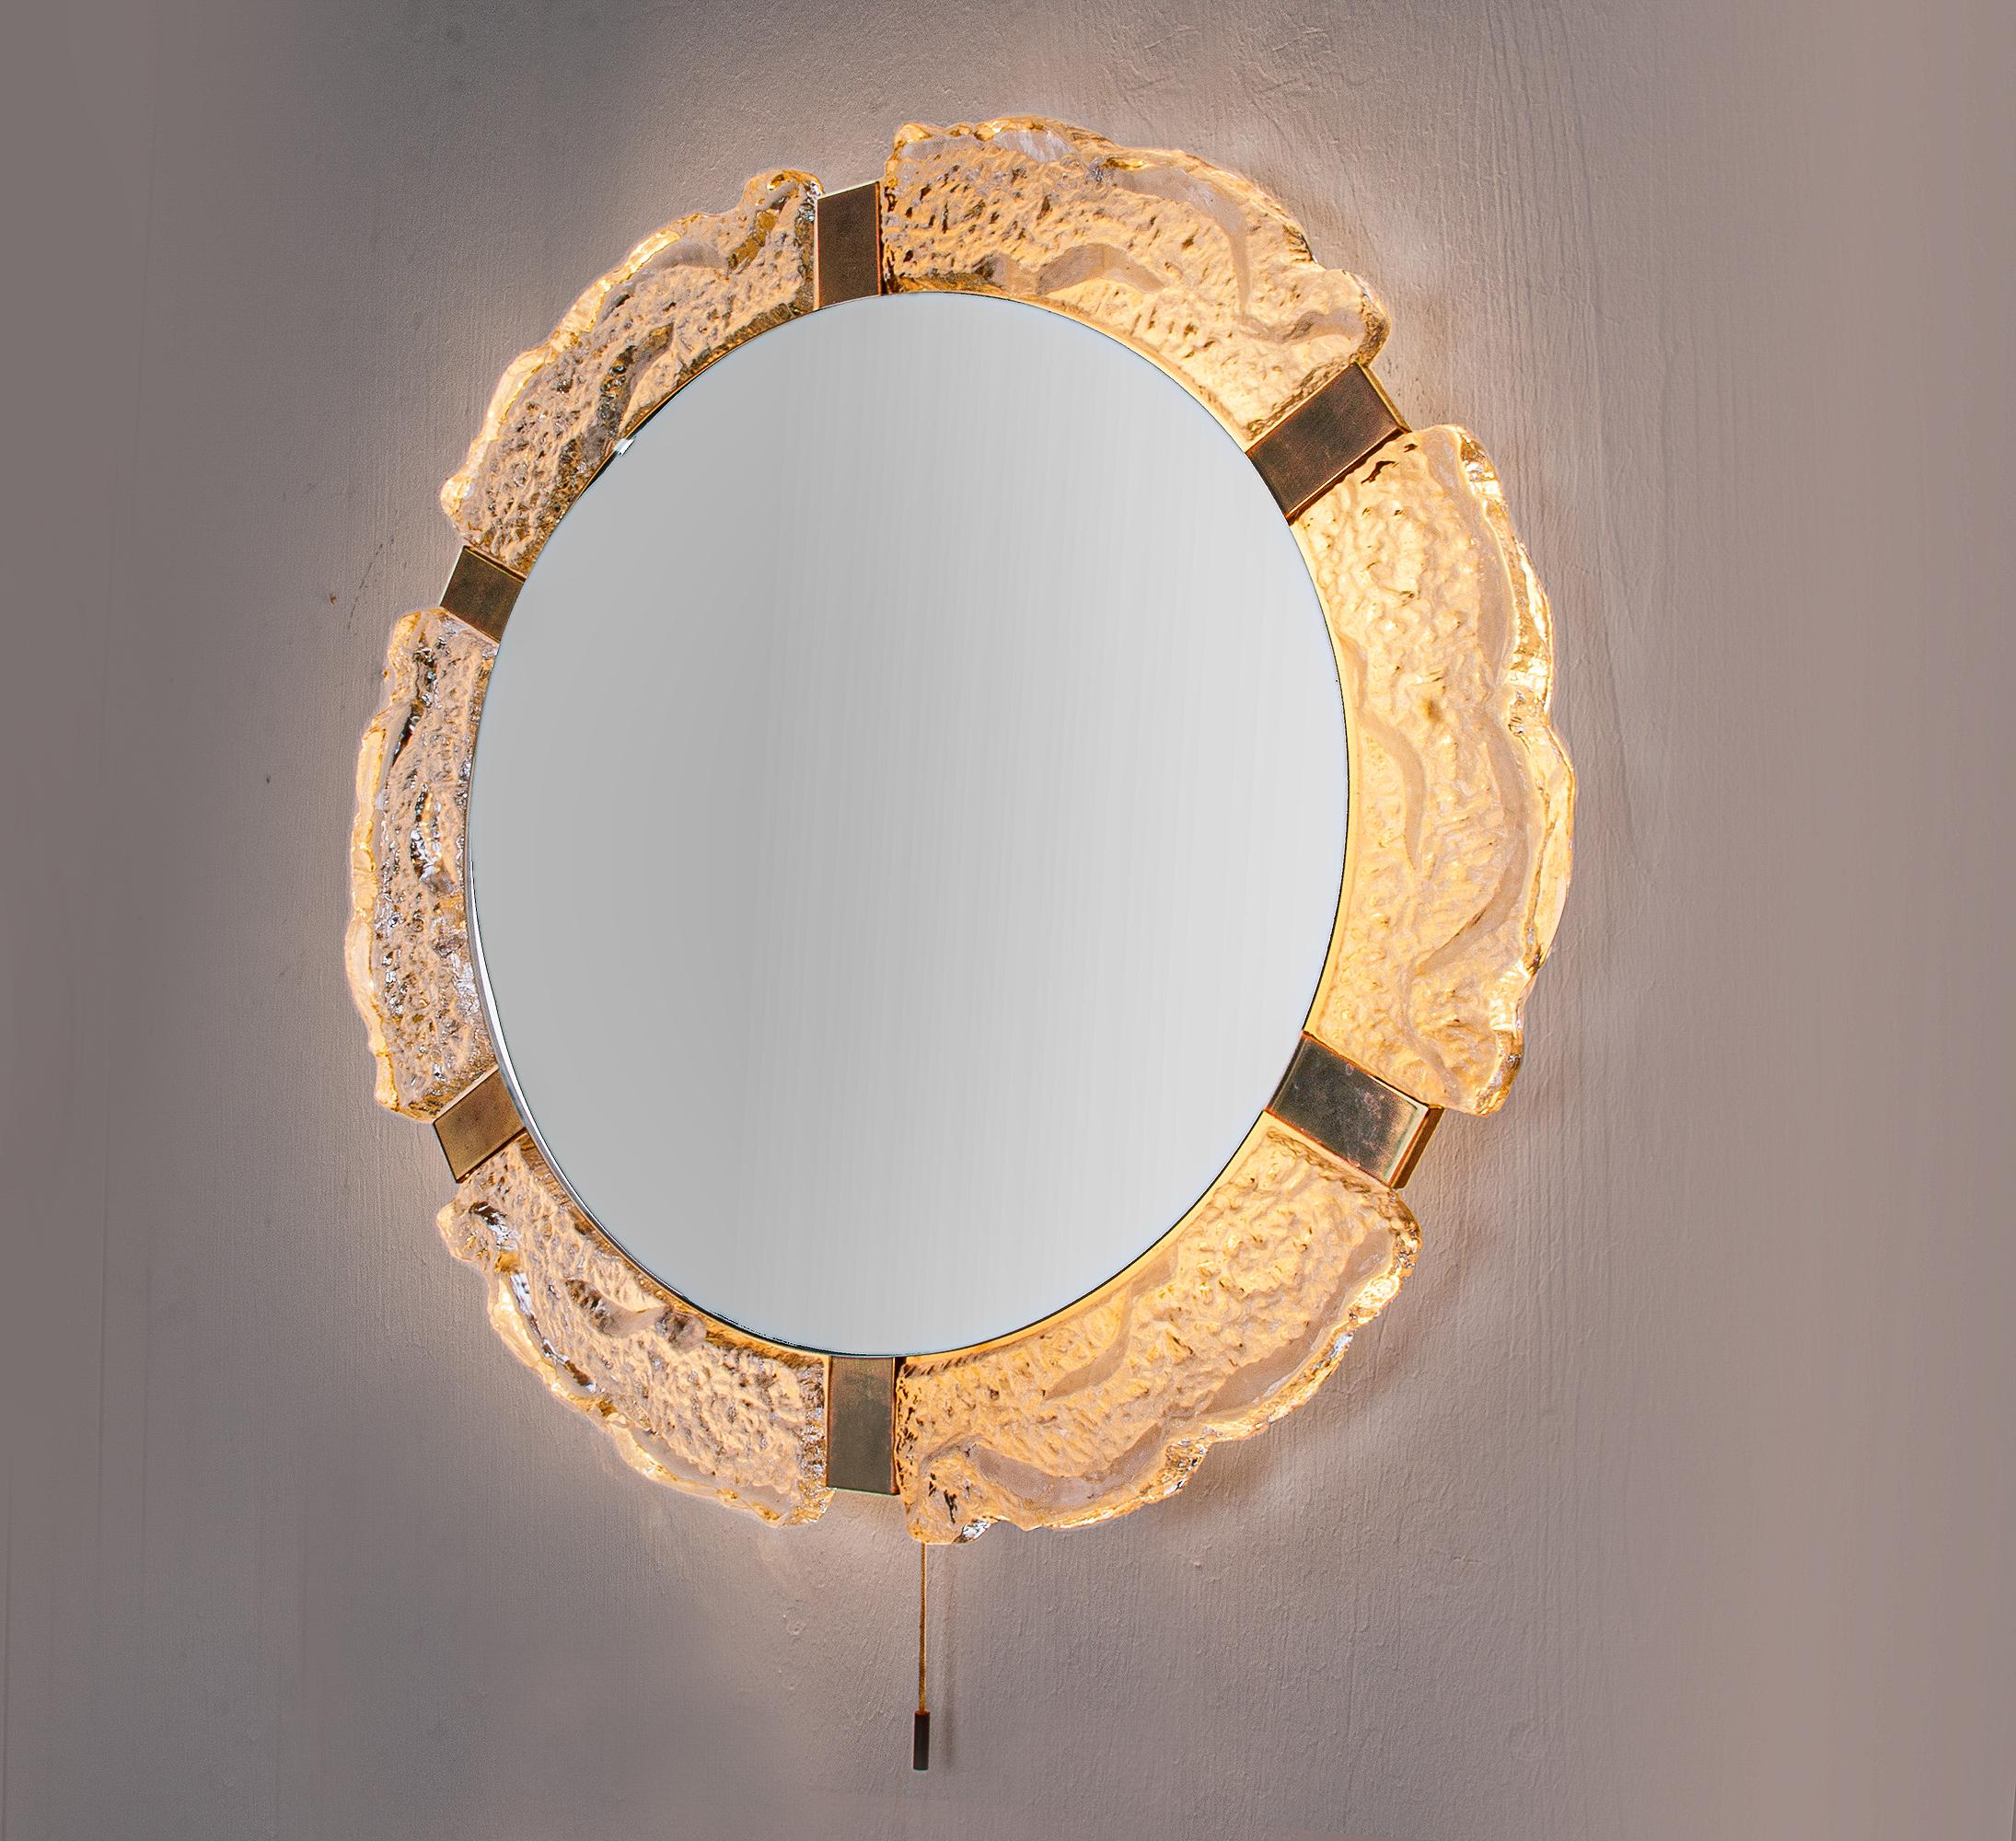 Eleganter Wandspiegel mit beleuchtetem Hintergrund. Hergestellt von J.T. Kalmar, Österreich in den 1960er Jahren. Der Rahmen ist aus Murano-Eisglas mit Messingbeschlägen gefertigt. 

Maße: Durchmesser 55 cm (21.65